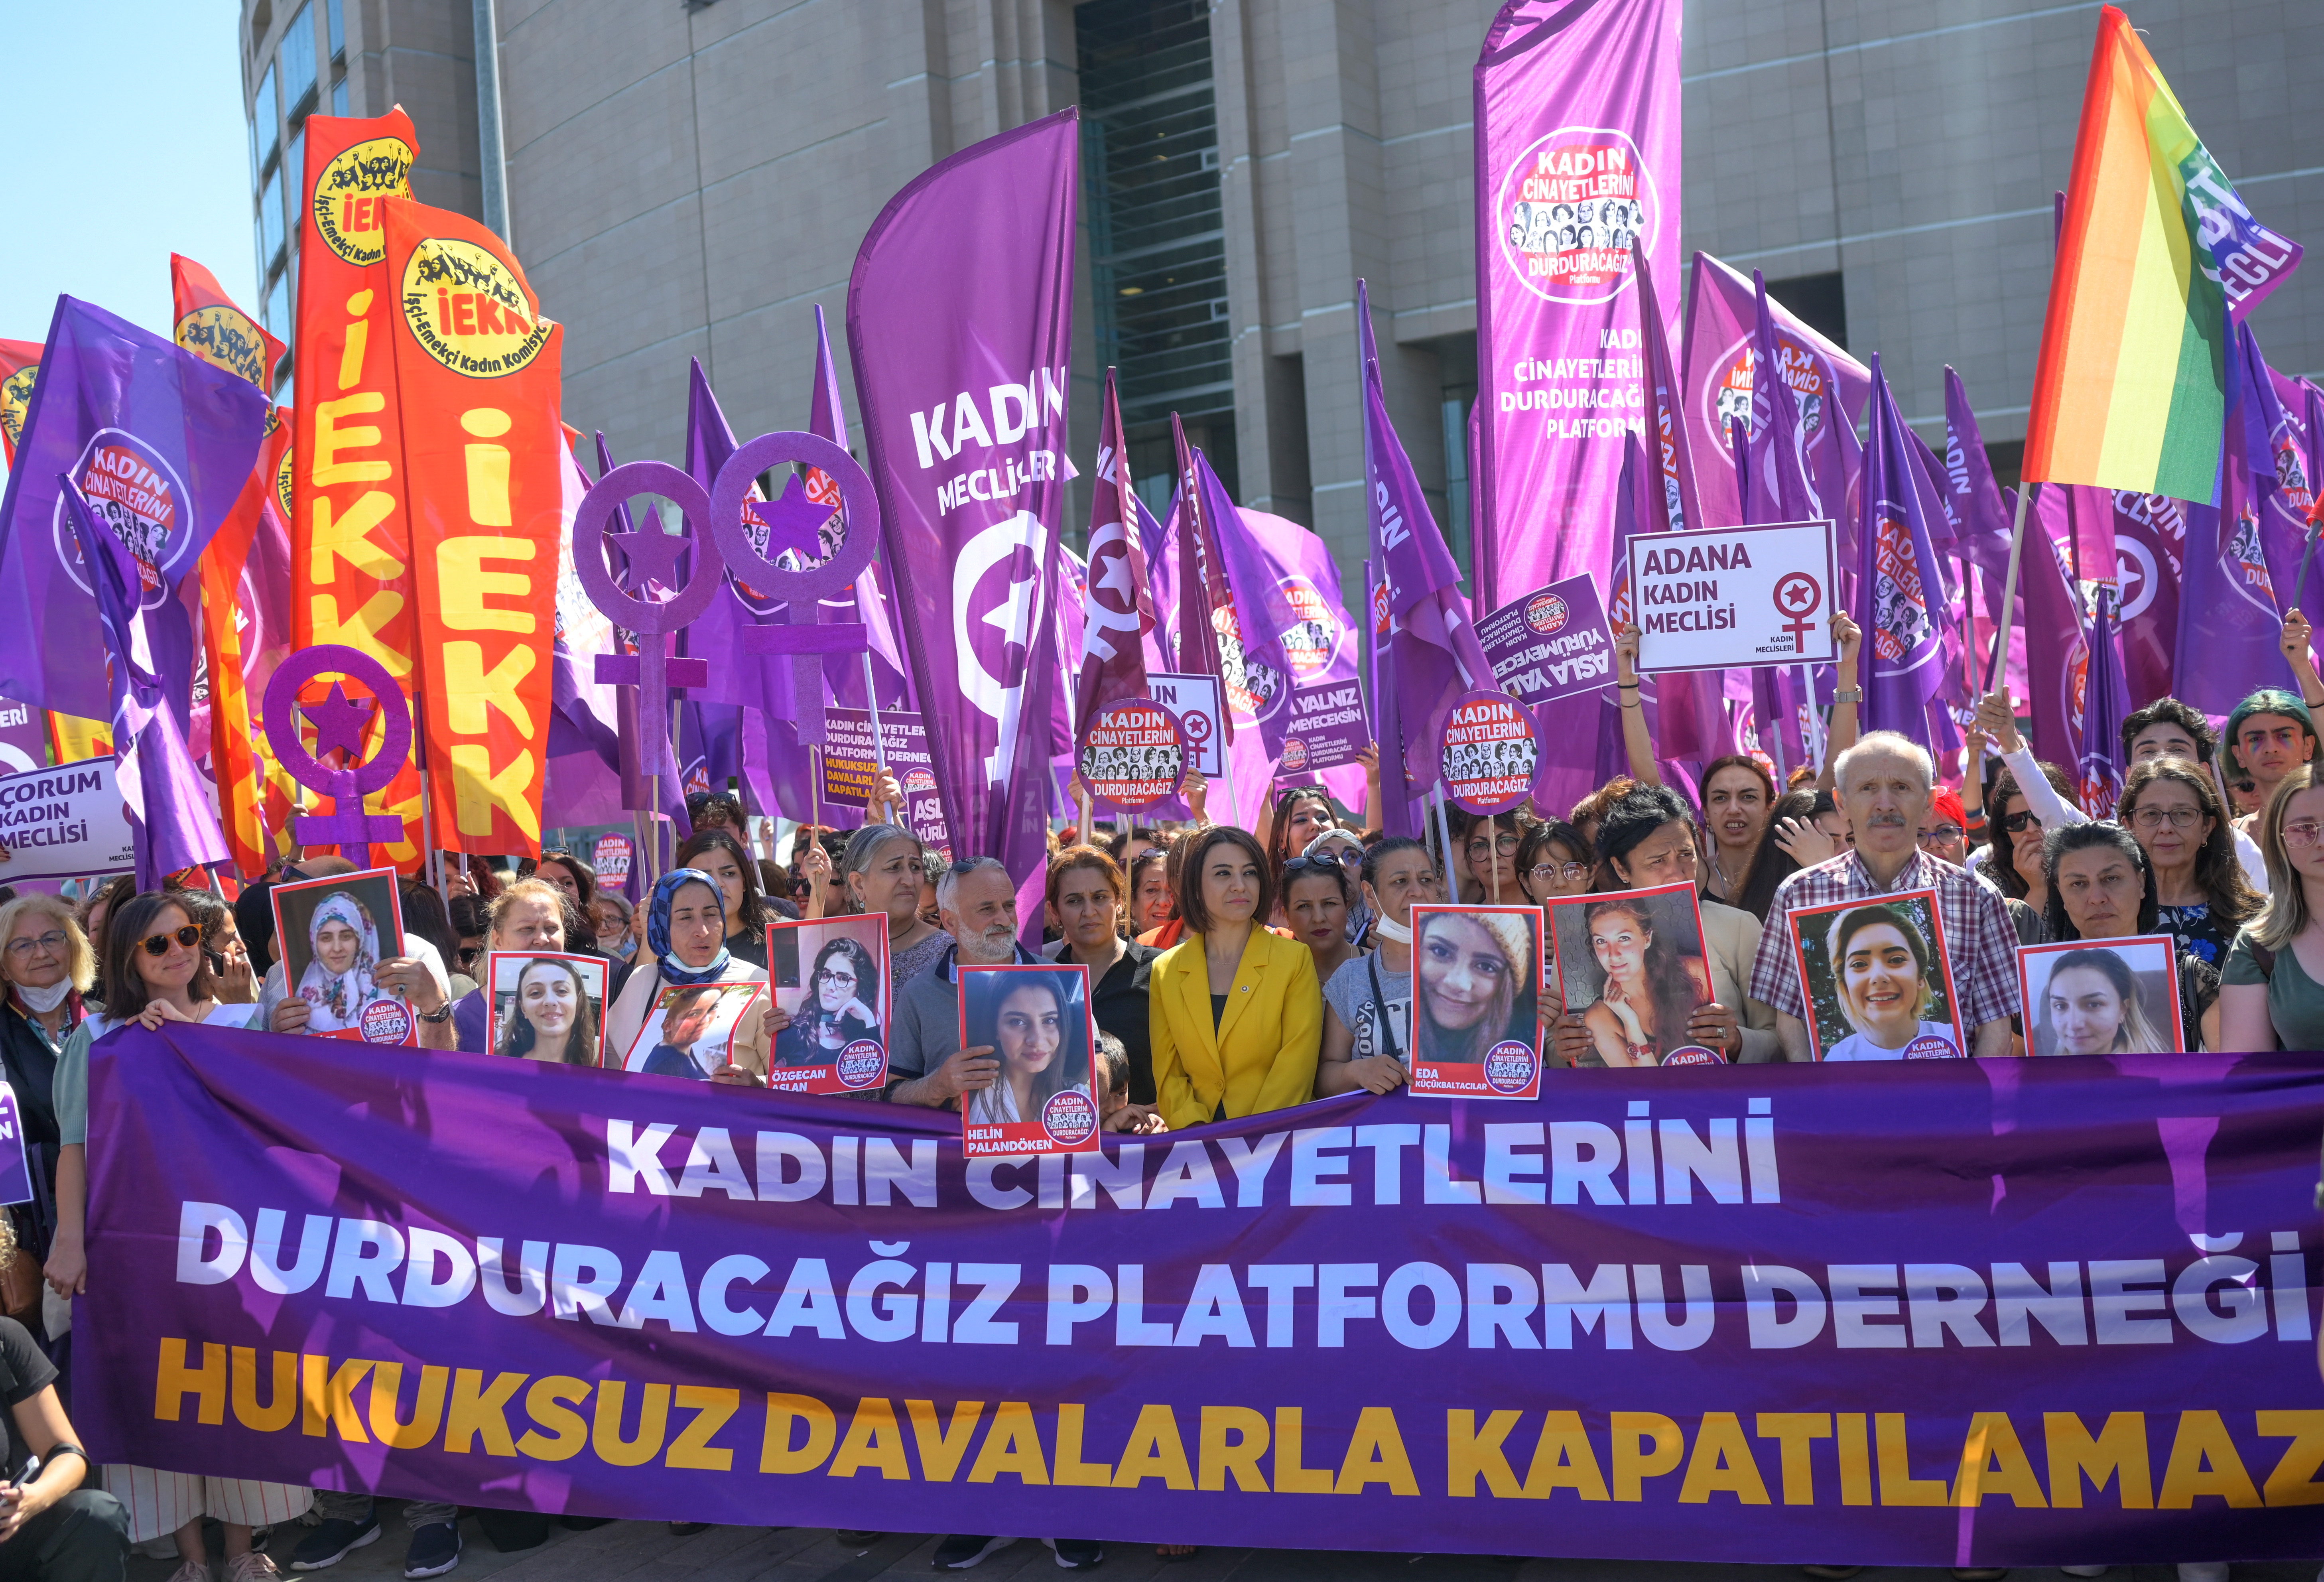 Nőjogi aktivisták és áldozatok rokonai tüntetnek az isztambuli törvényszék előtt.